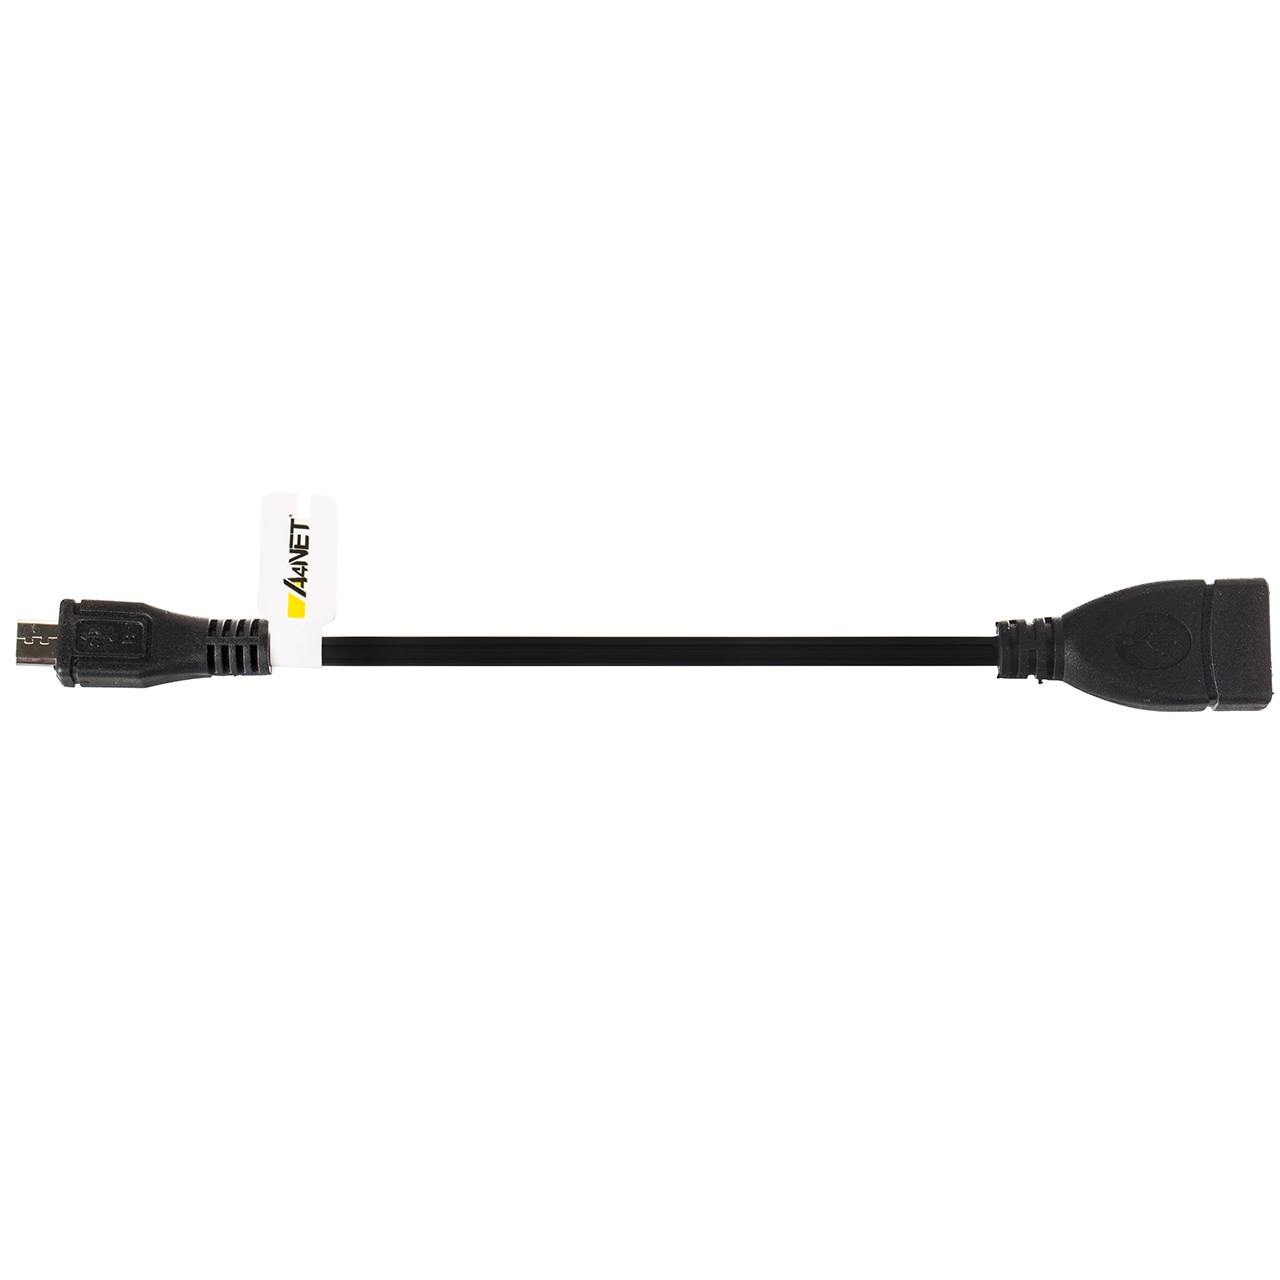 کابل تبدیل microUSB-B به USB-A OTG ای فور نت مدل OTG-150 طول 0.15 متر